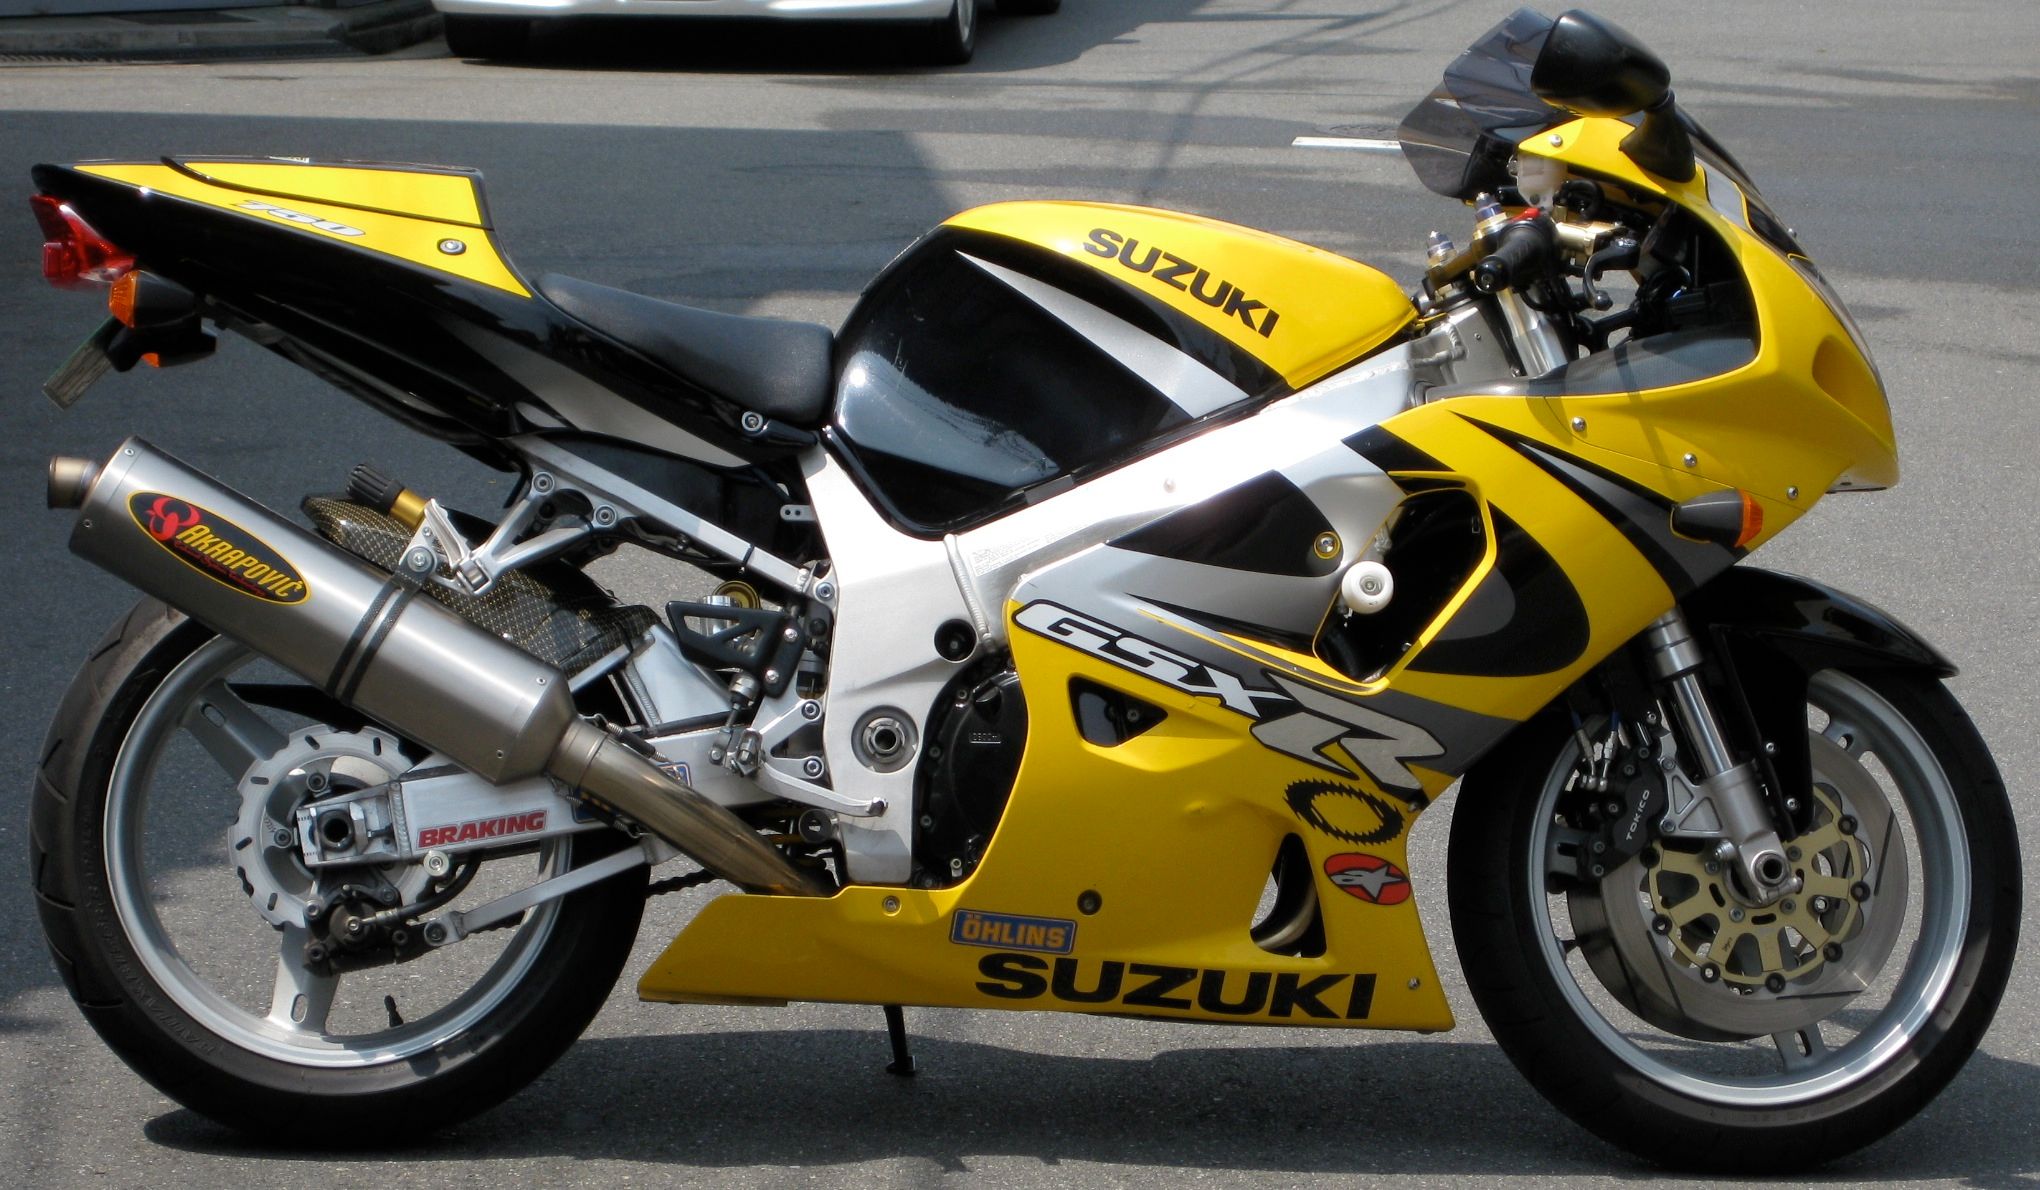 An Image Of A Suzuki GSX-R750Y